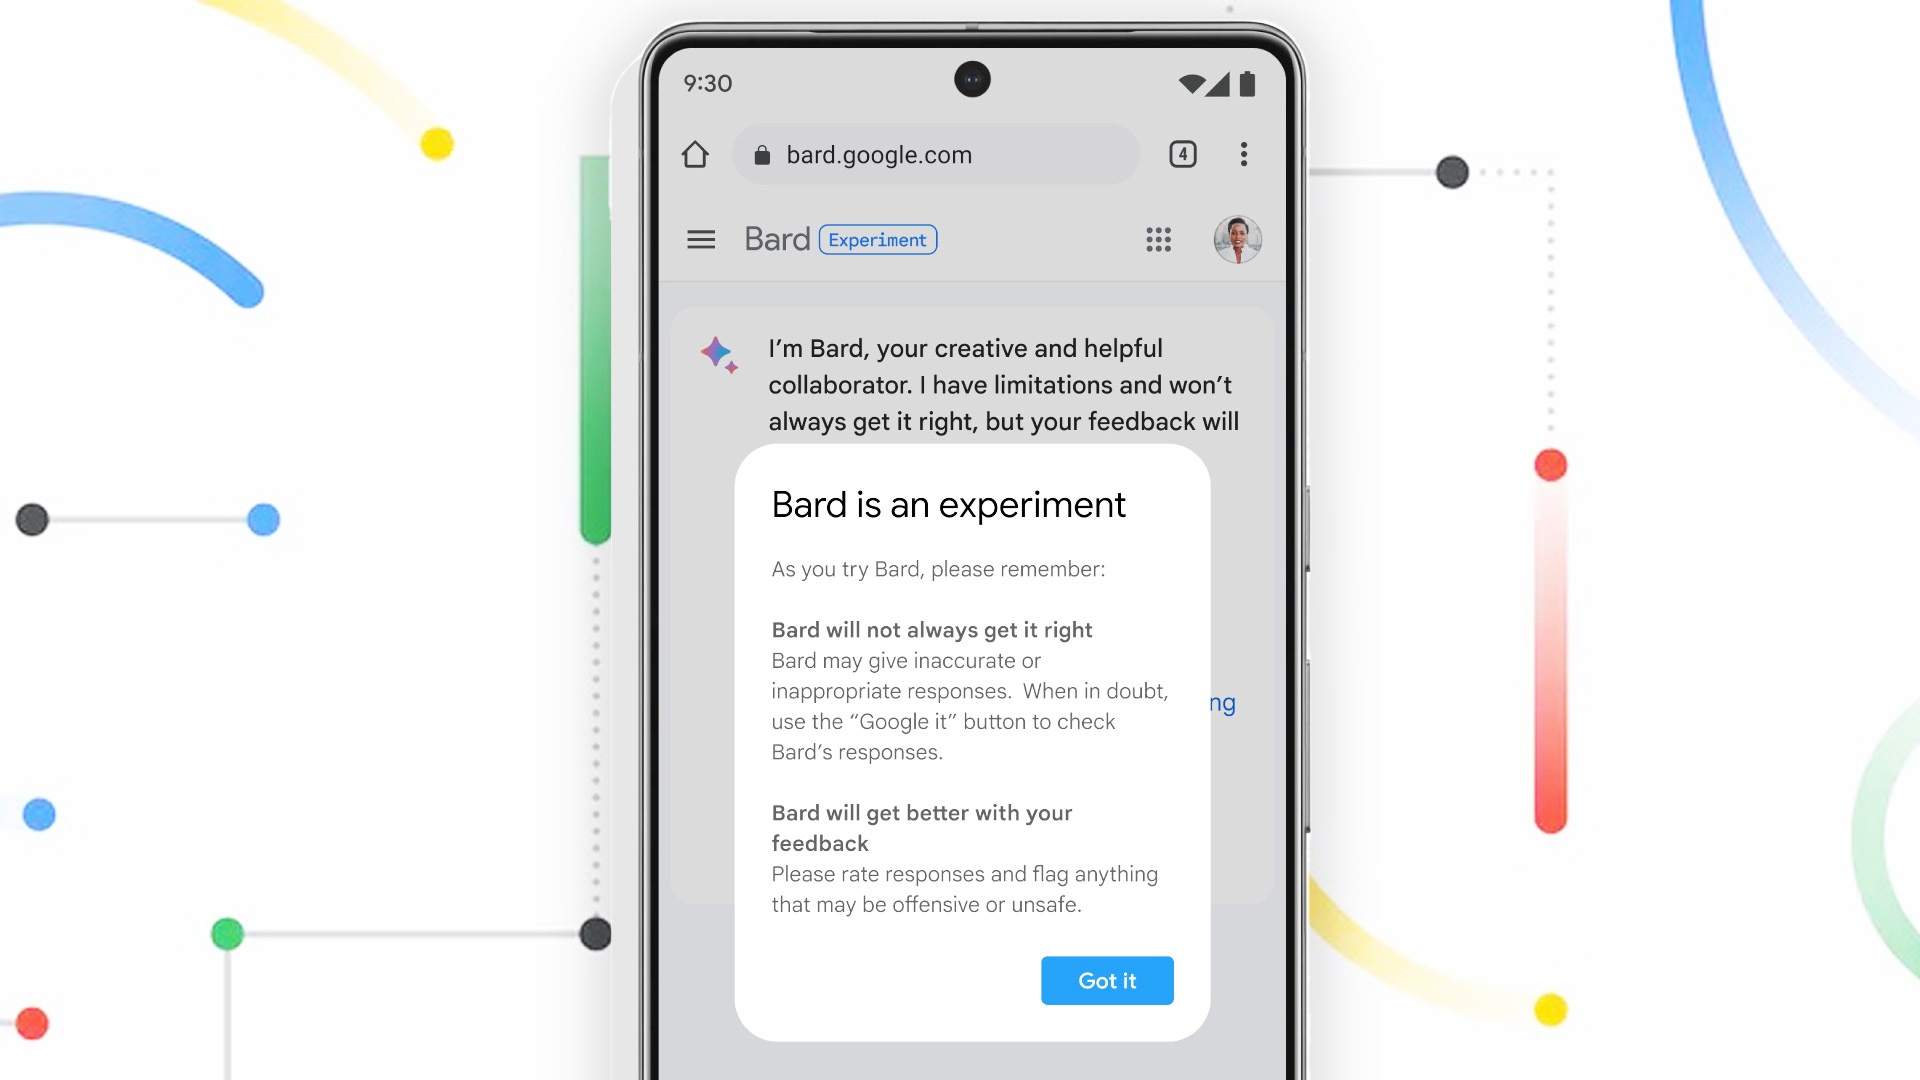 #Google KI »leakt« Infos zu neuen Pixel Smartphones – und liegt vermutlich nicht ganz daneben